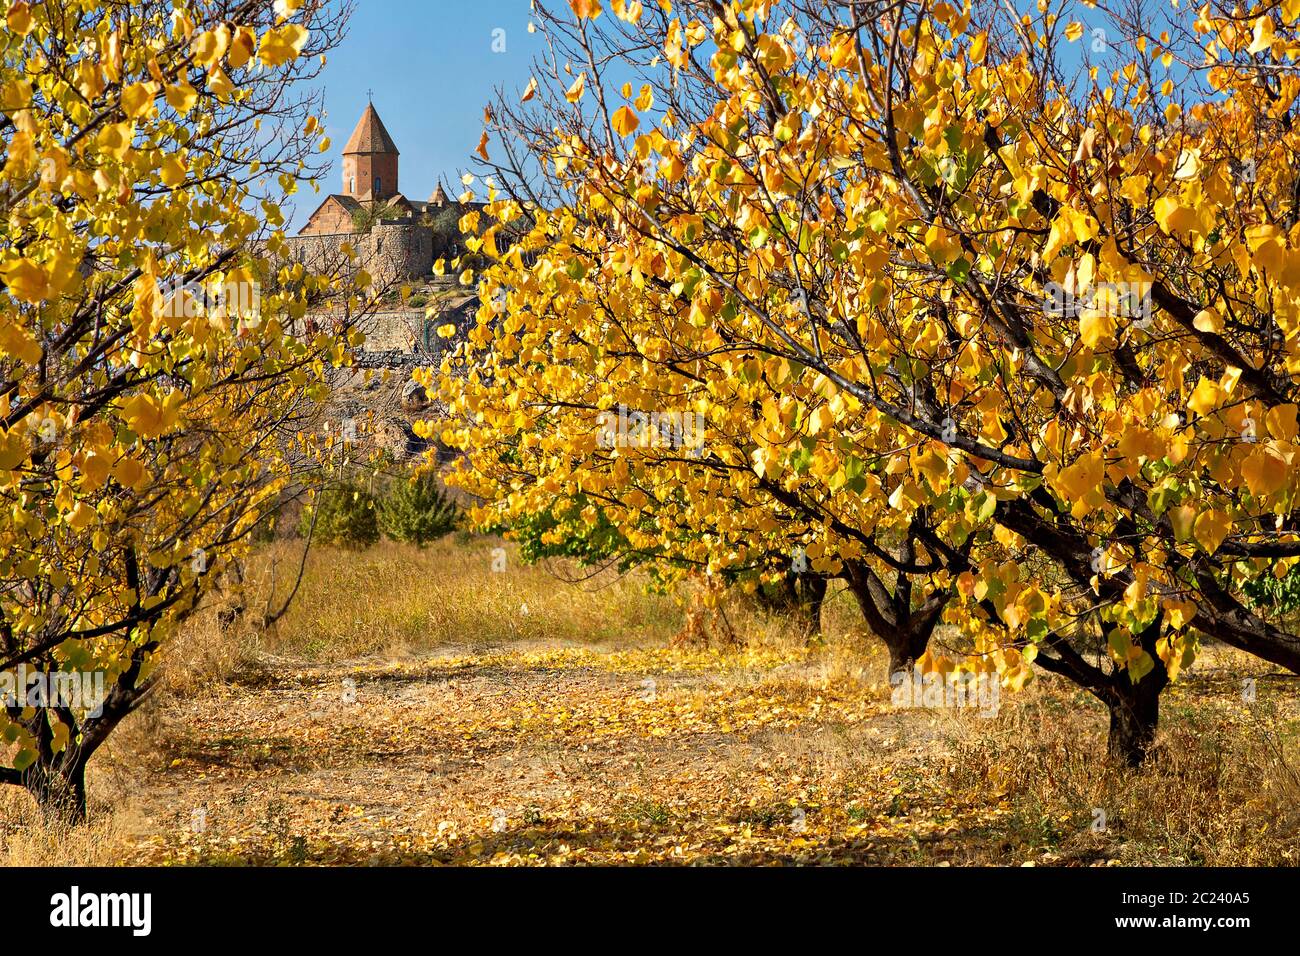 Monastère Khor Virap à travers des feuilles aux couleurs d'automne, Arménie Banque D'Images